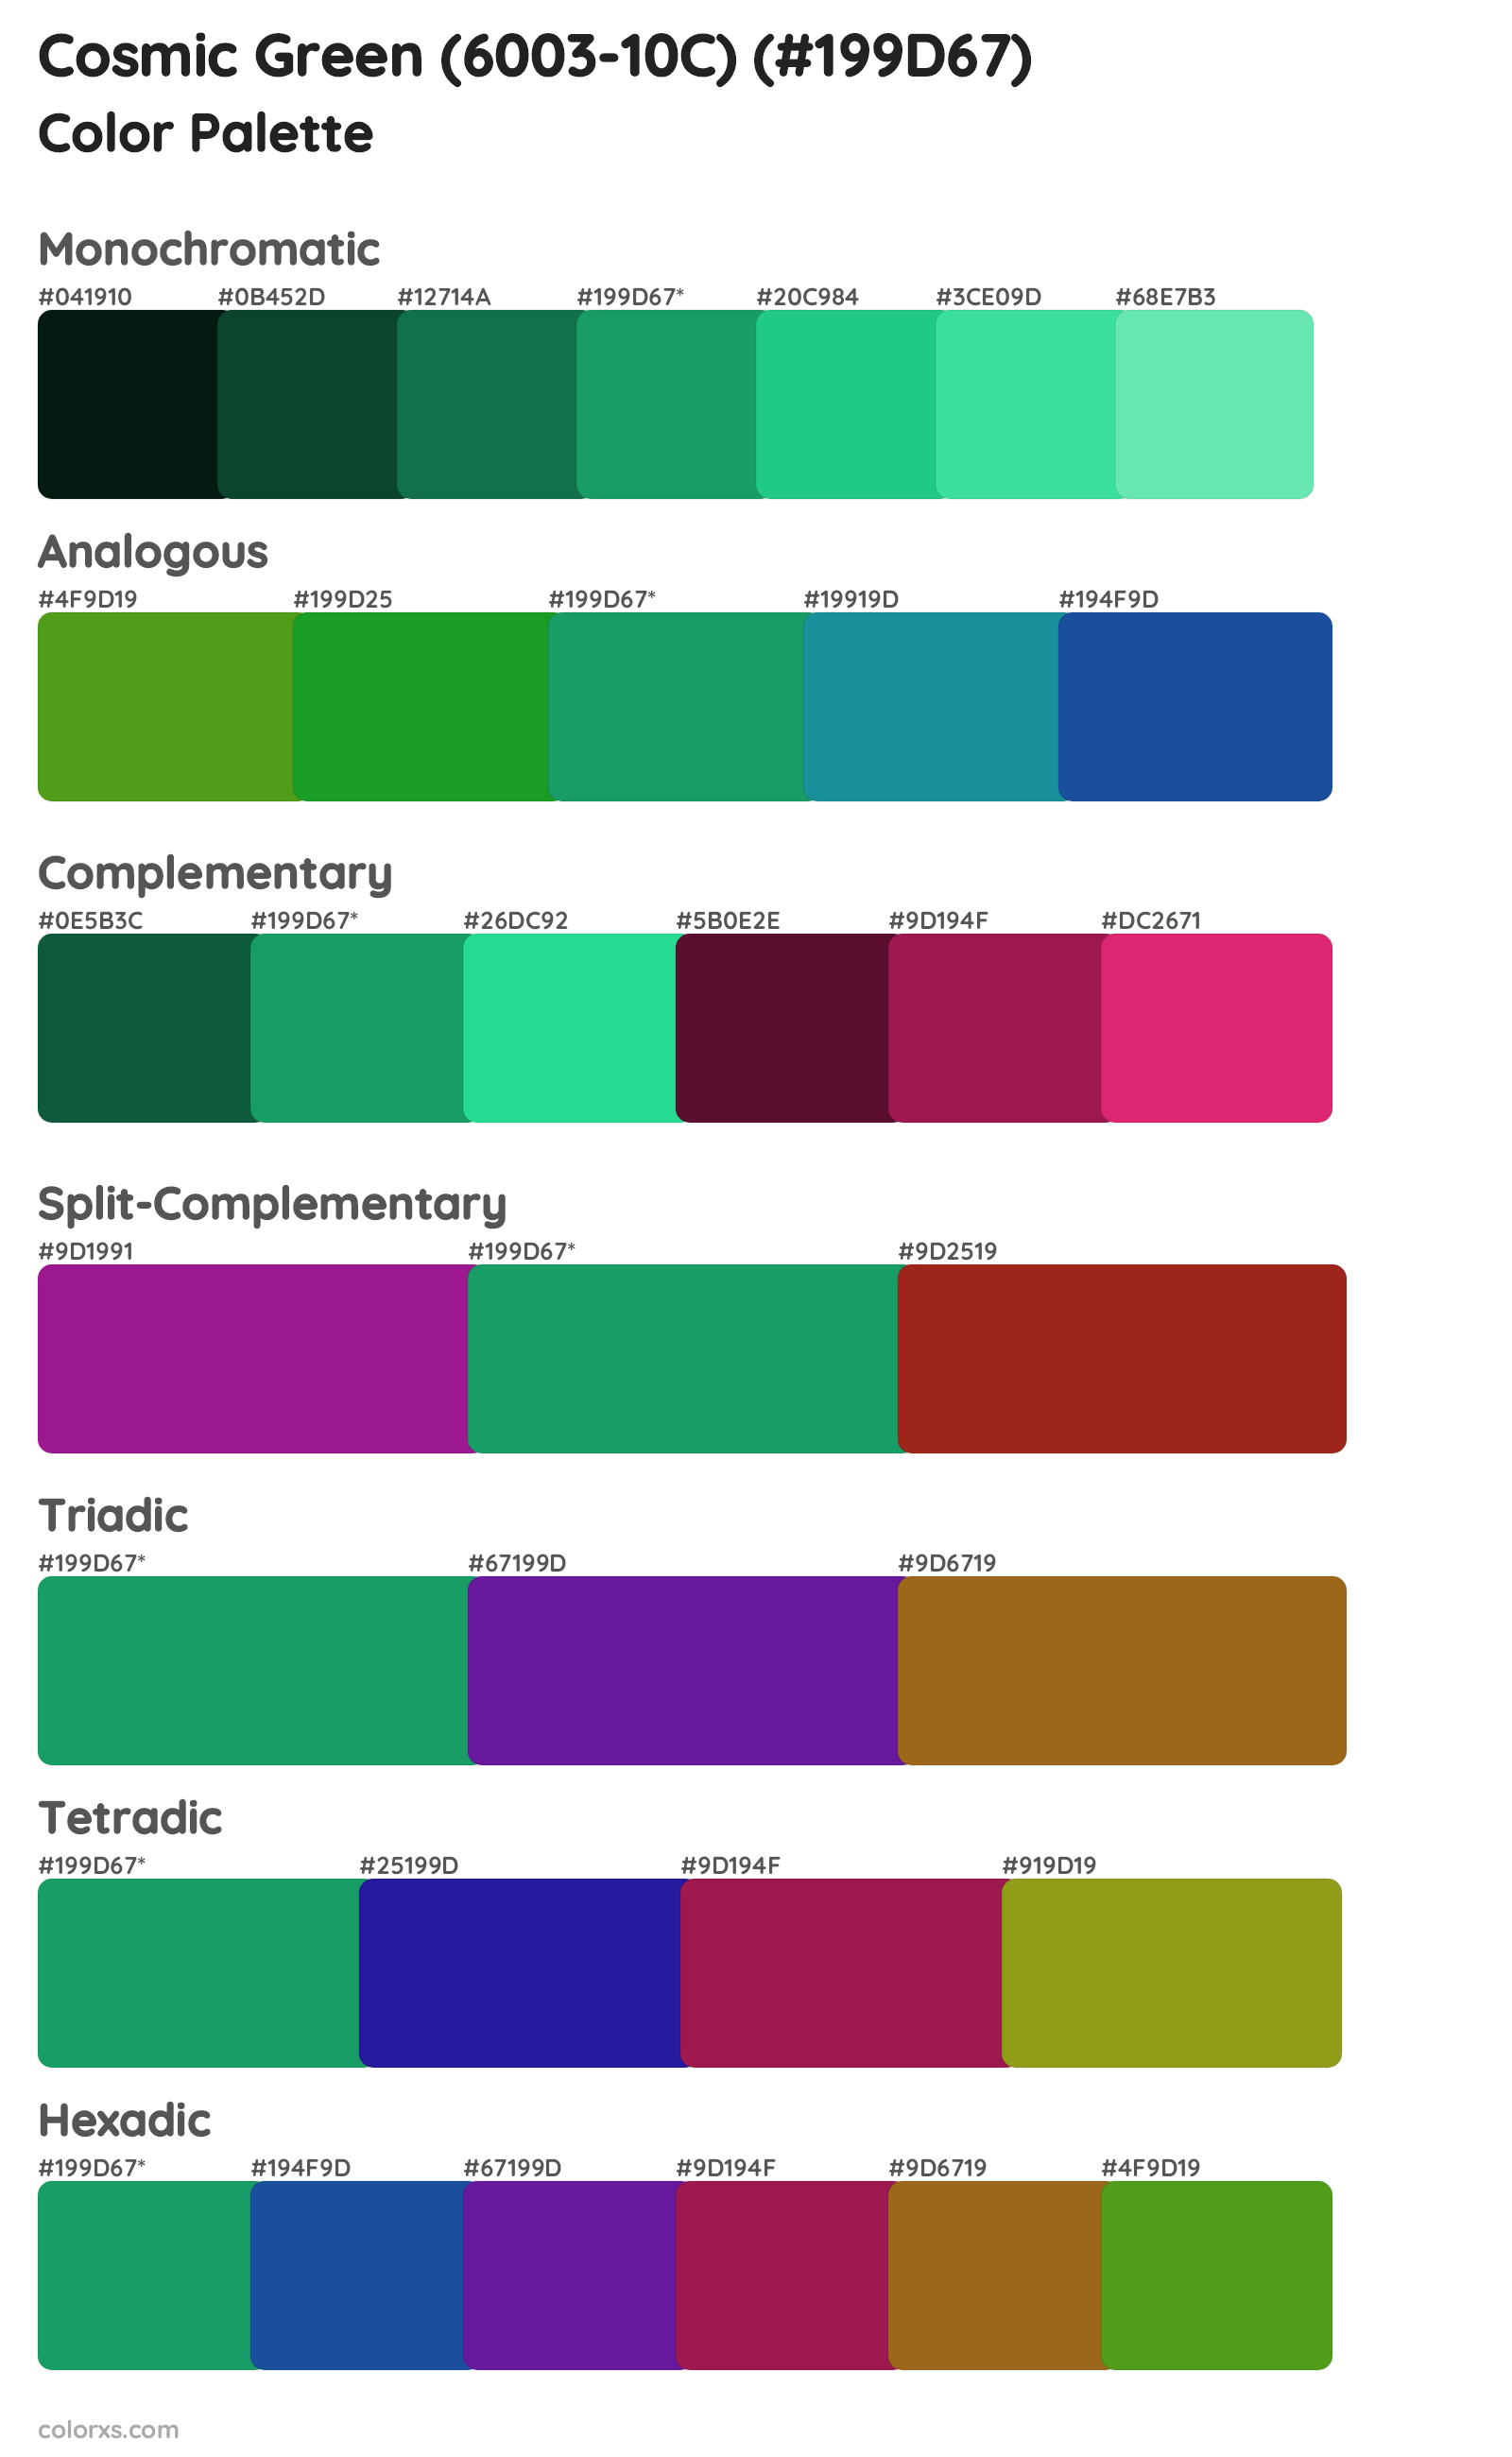 Cosmic Green (6003-10C) Color Scheme Palettes